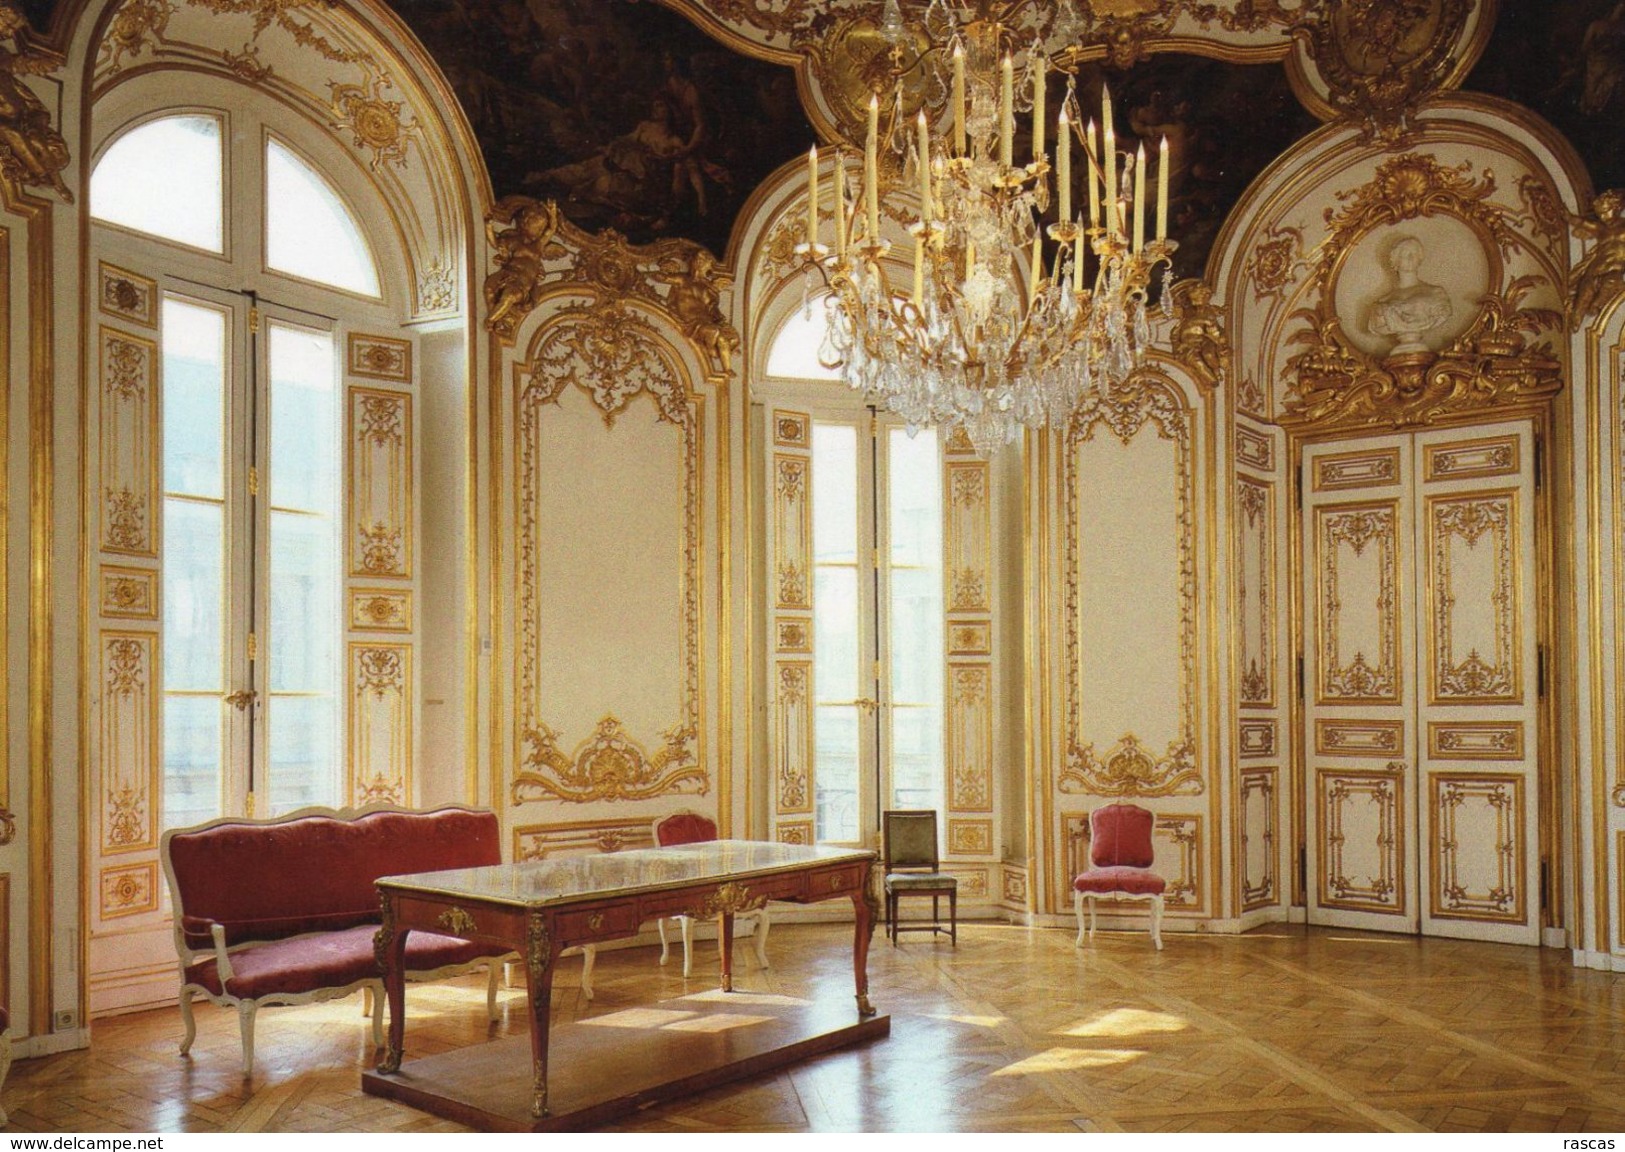 CPM - K - PARIS - ARCHIVES NATIONALES - HOTEL DE SOUBISE - SALON OVALE DE LA PRINCESSE - GERMAIN BOFFRAND 1735 - 1740 - Autres Monuments, édifices